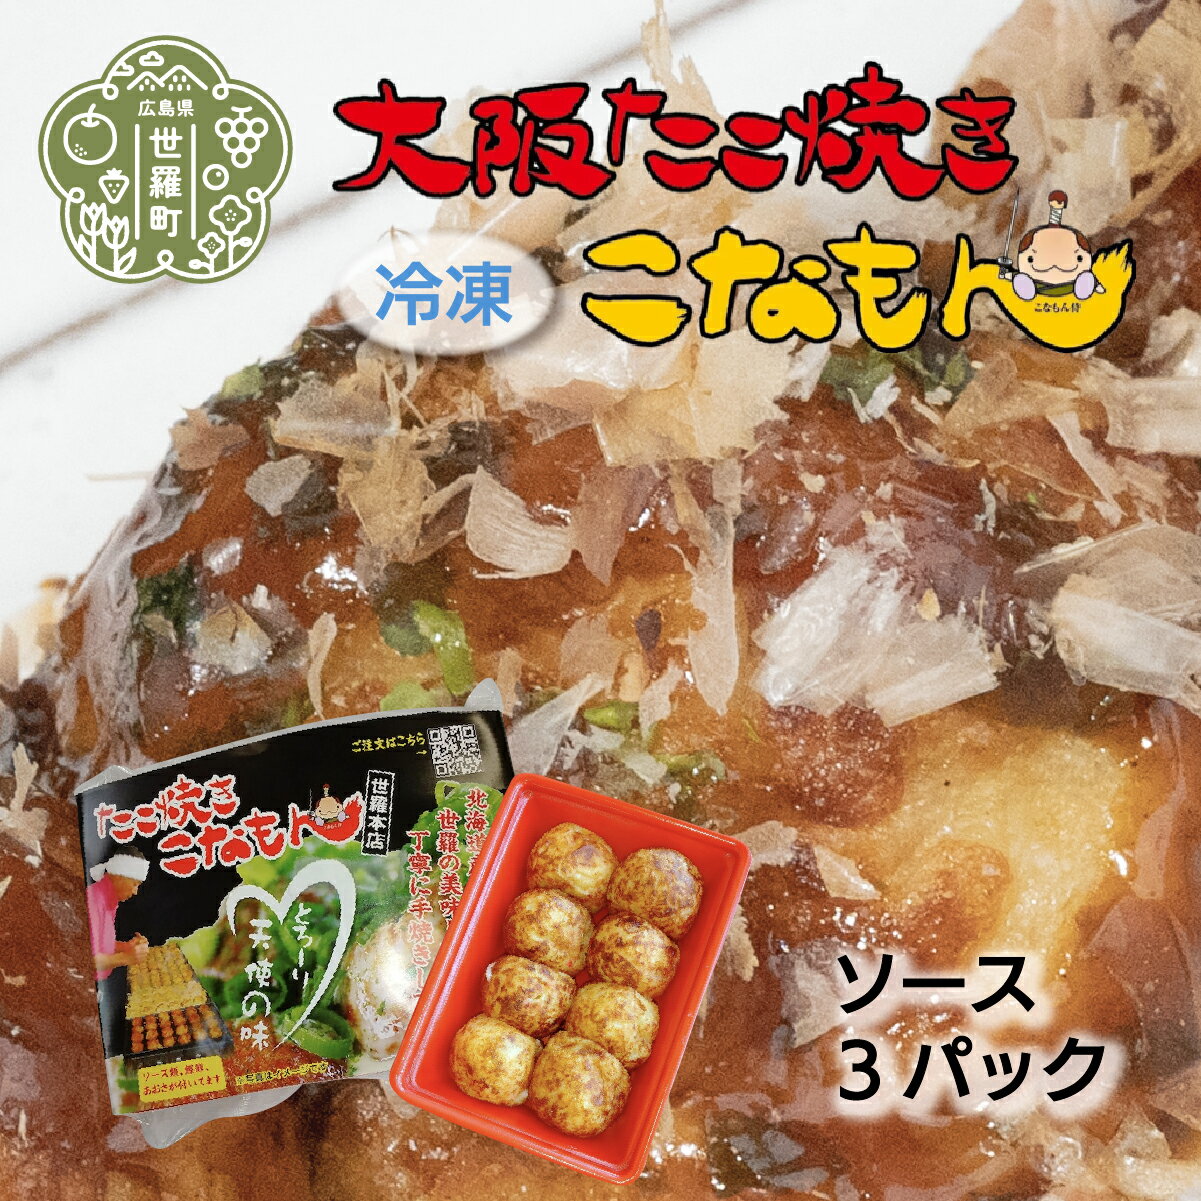 冷凍たこ焼き 8個入(ソース)×3パック 大粒 タコ焼き おつまみ おやつ 惣菜 冷凍 A061-04